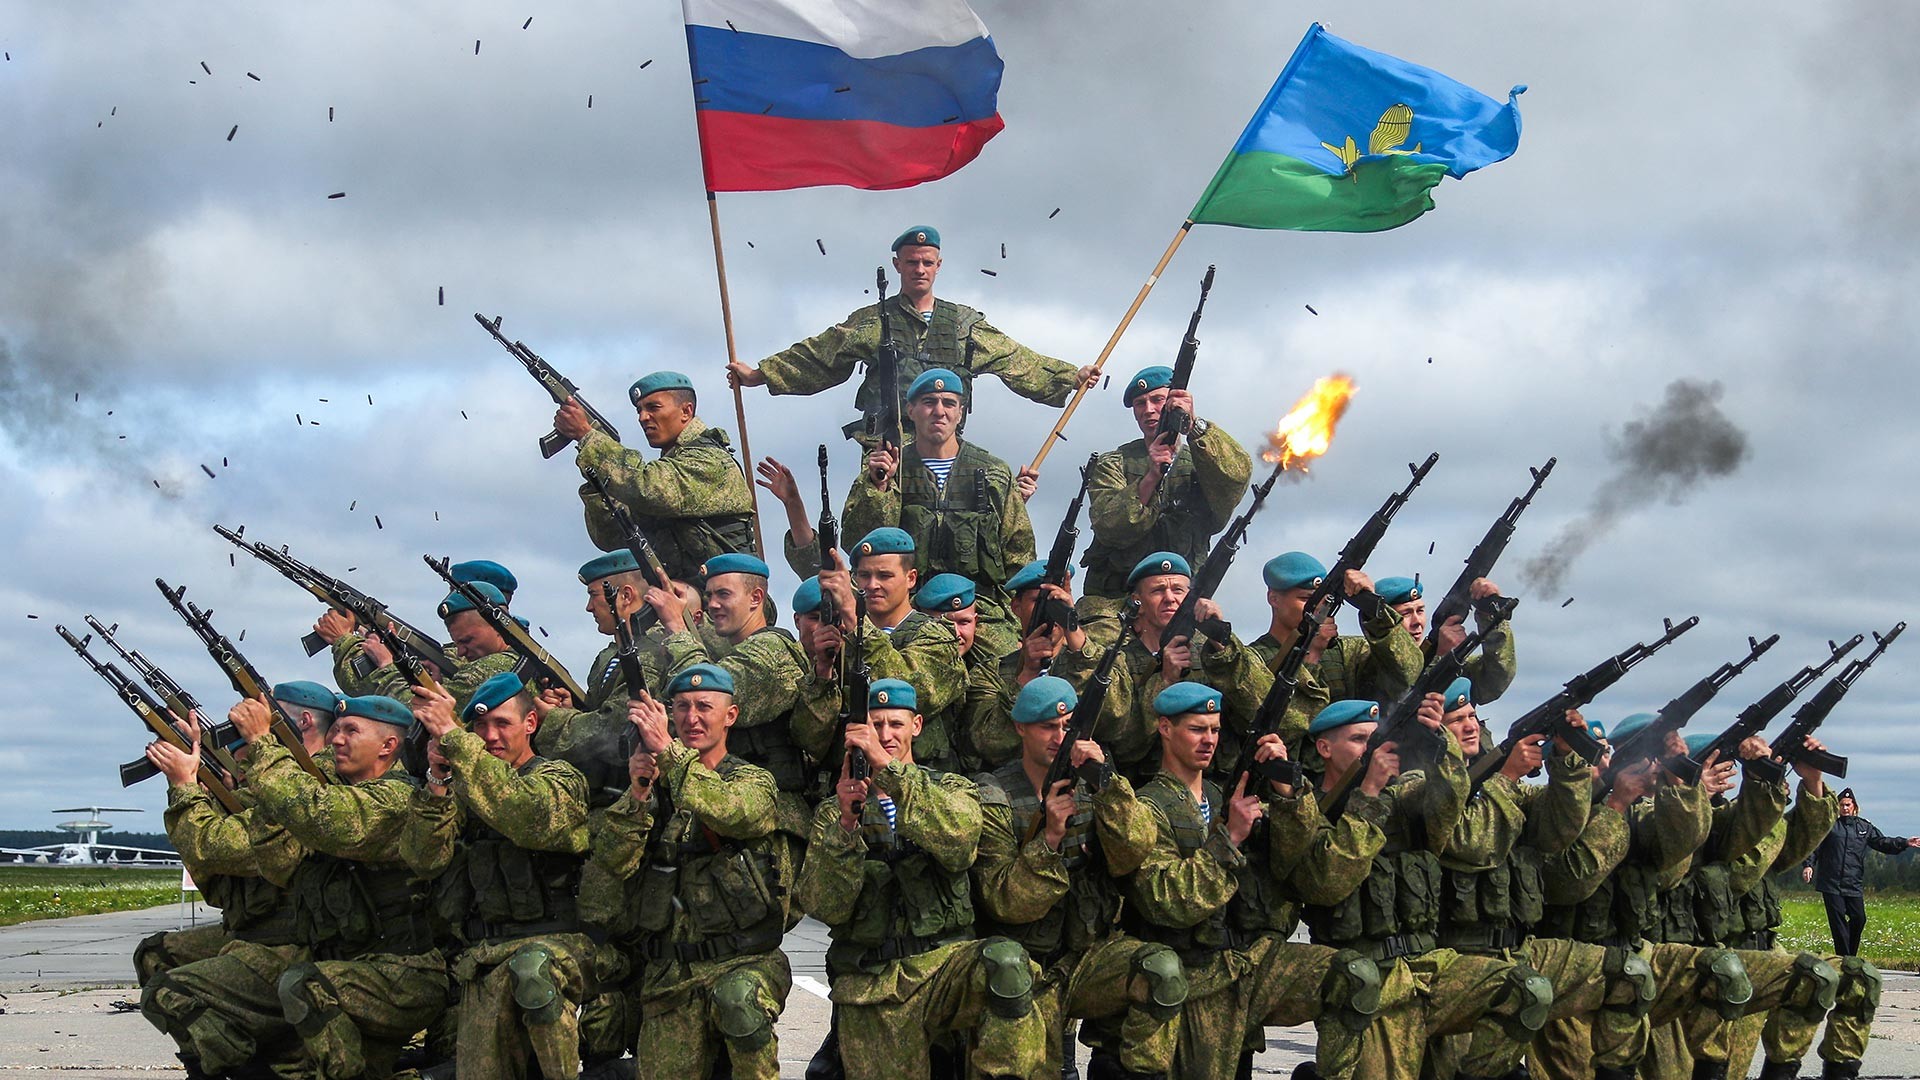 Припадници 98. дивизије десантно-падобранских снага за време војно-патриотског фестивала „Отворено небо 2019“ на еародрому Северни.